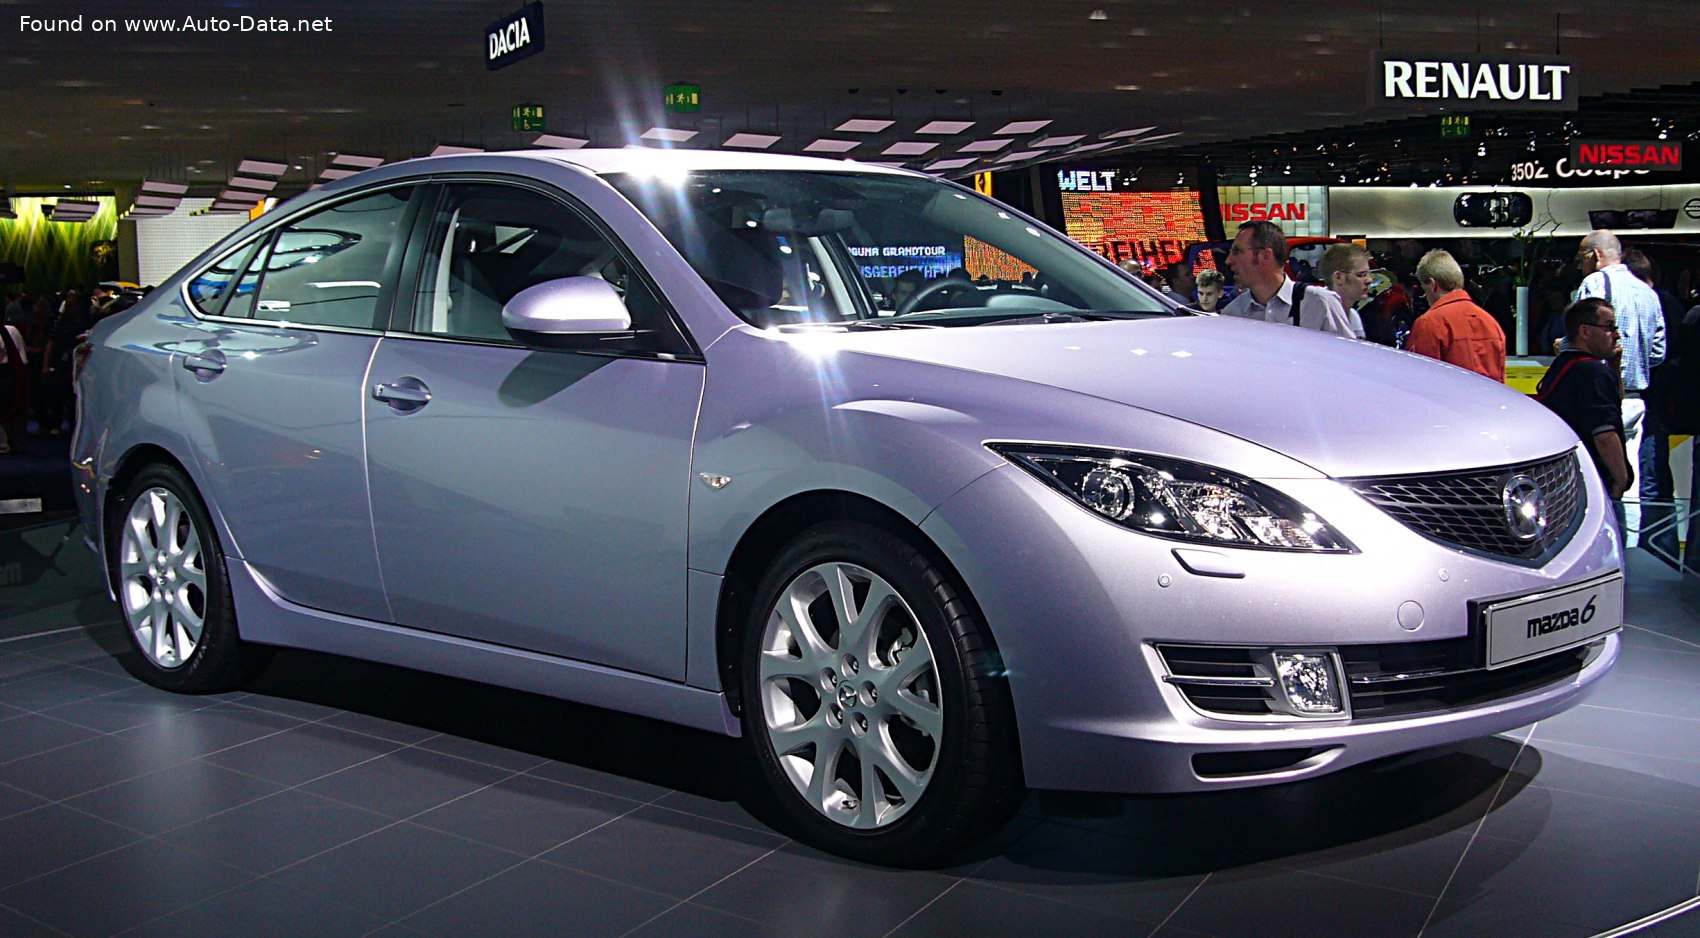 2007 Mazda 6 II Hatchback (GH) 2.5 (170 Hp)